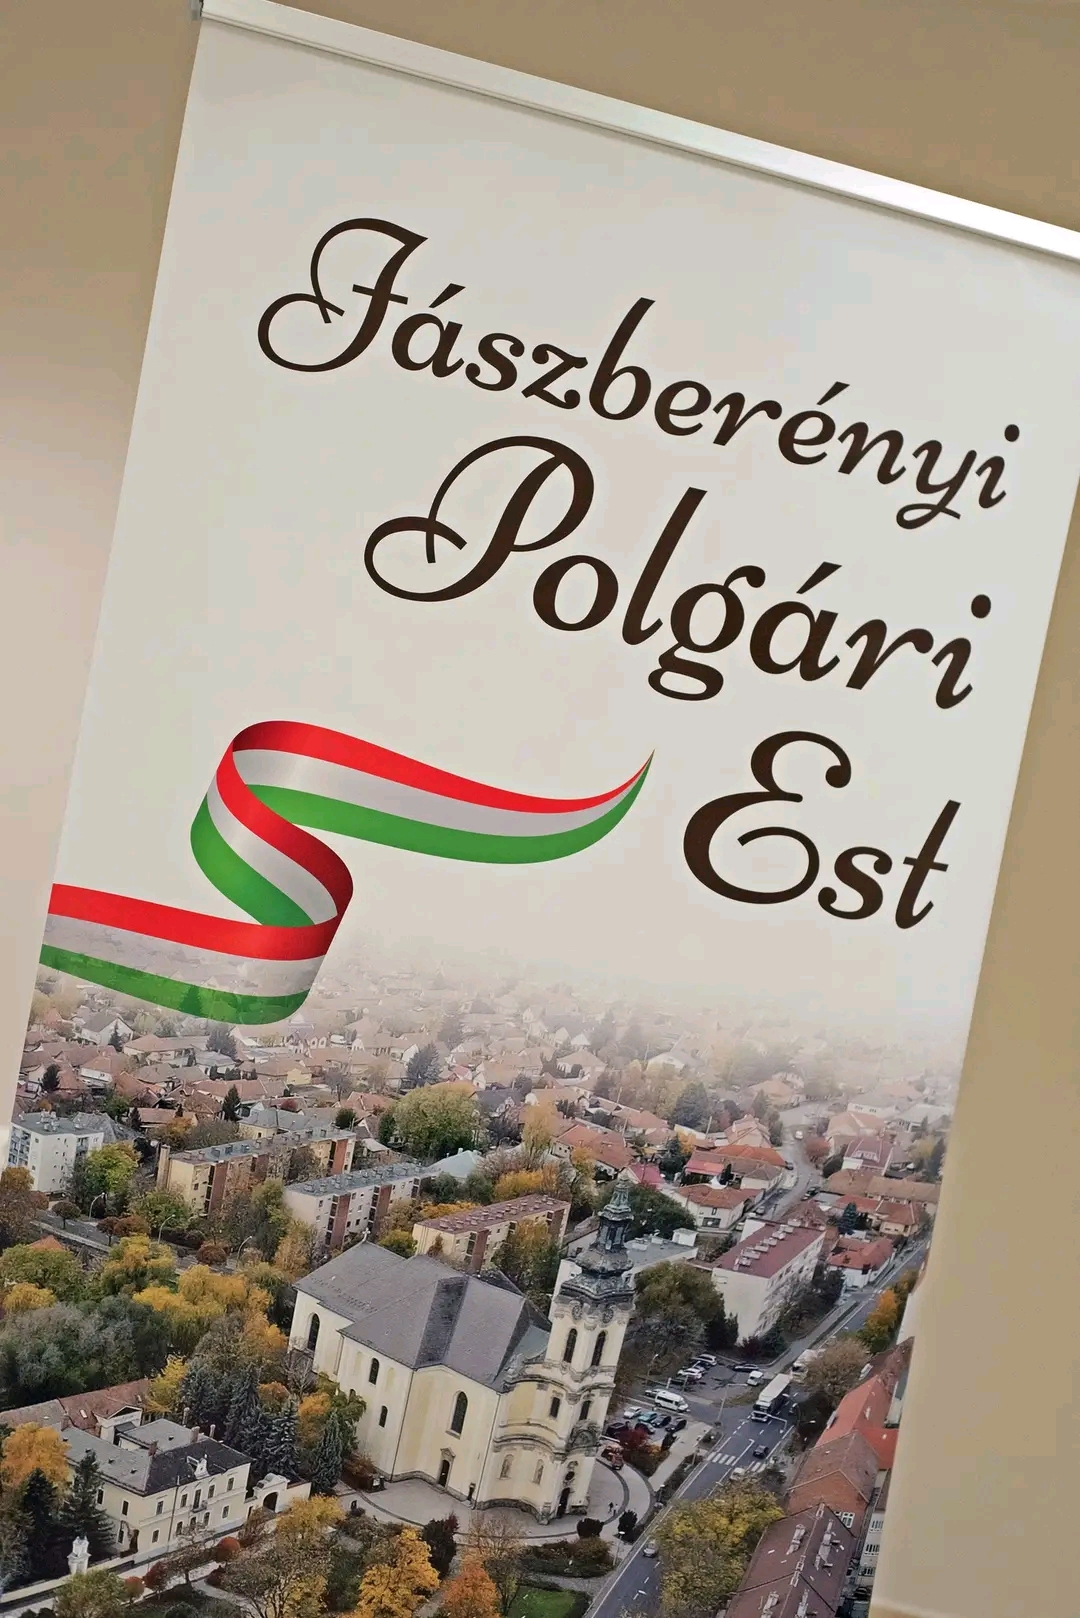 Jászberényi kereszténydemokrata est